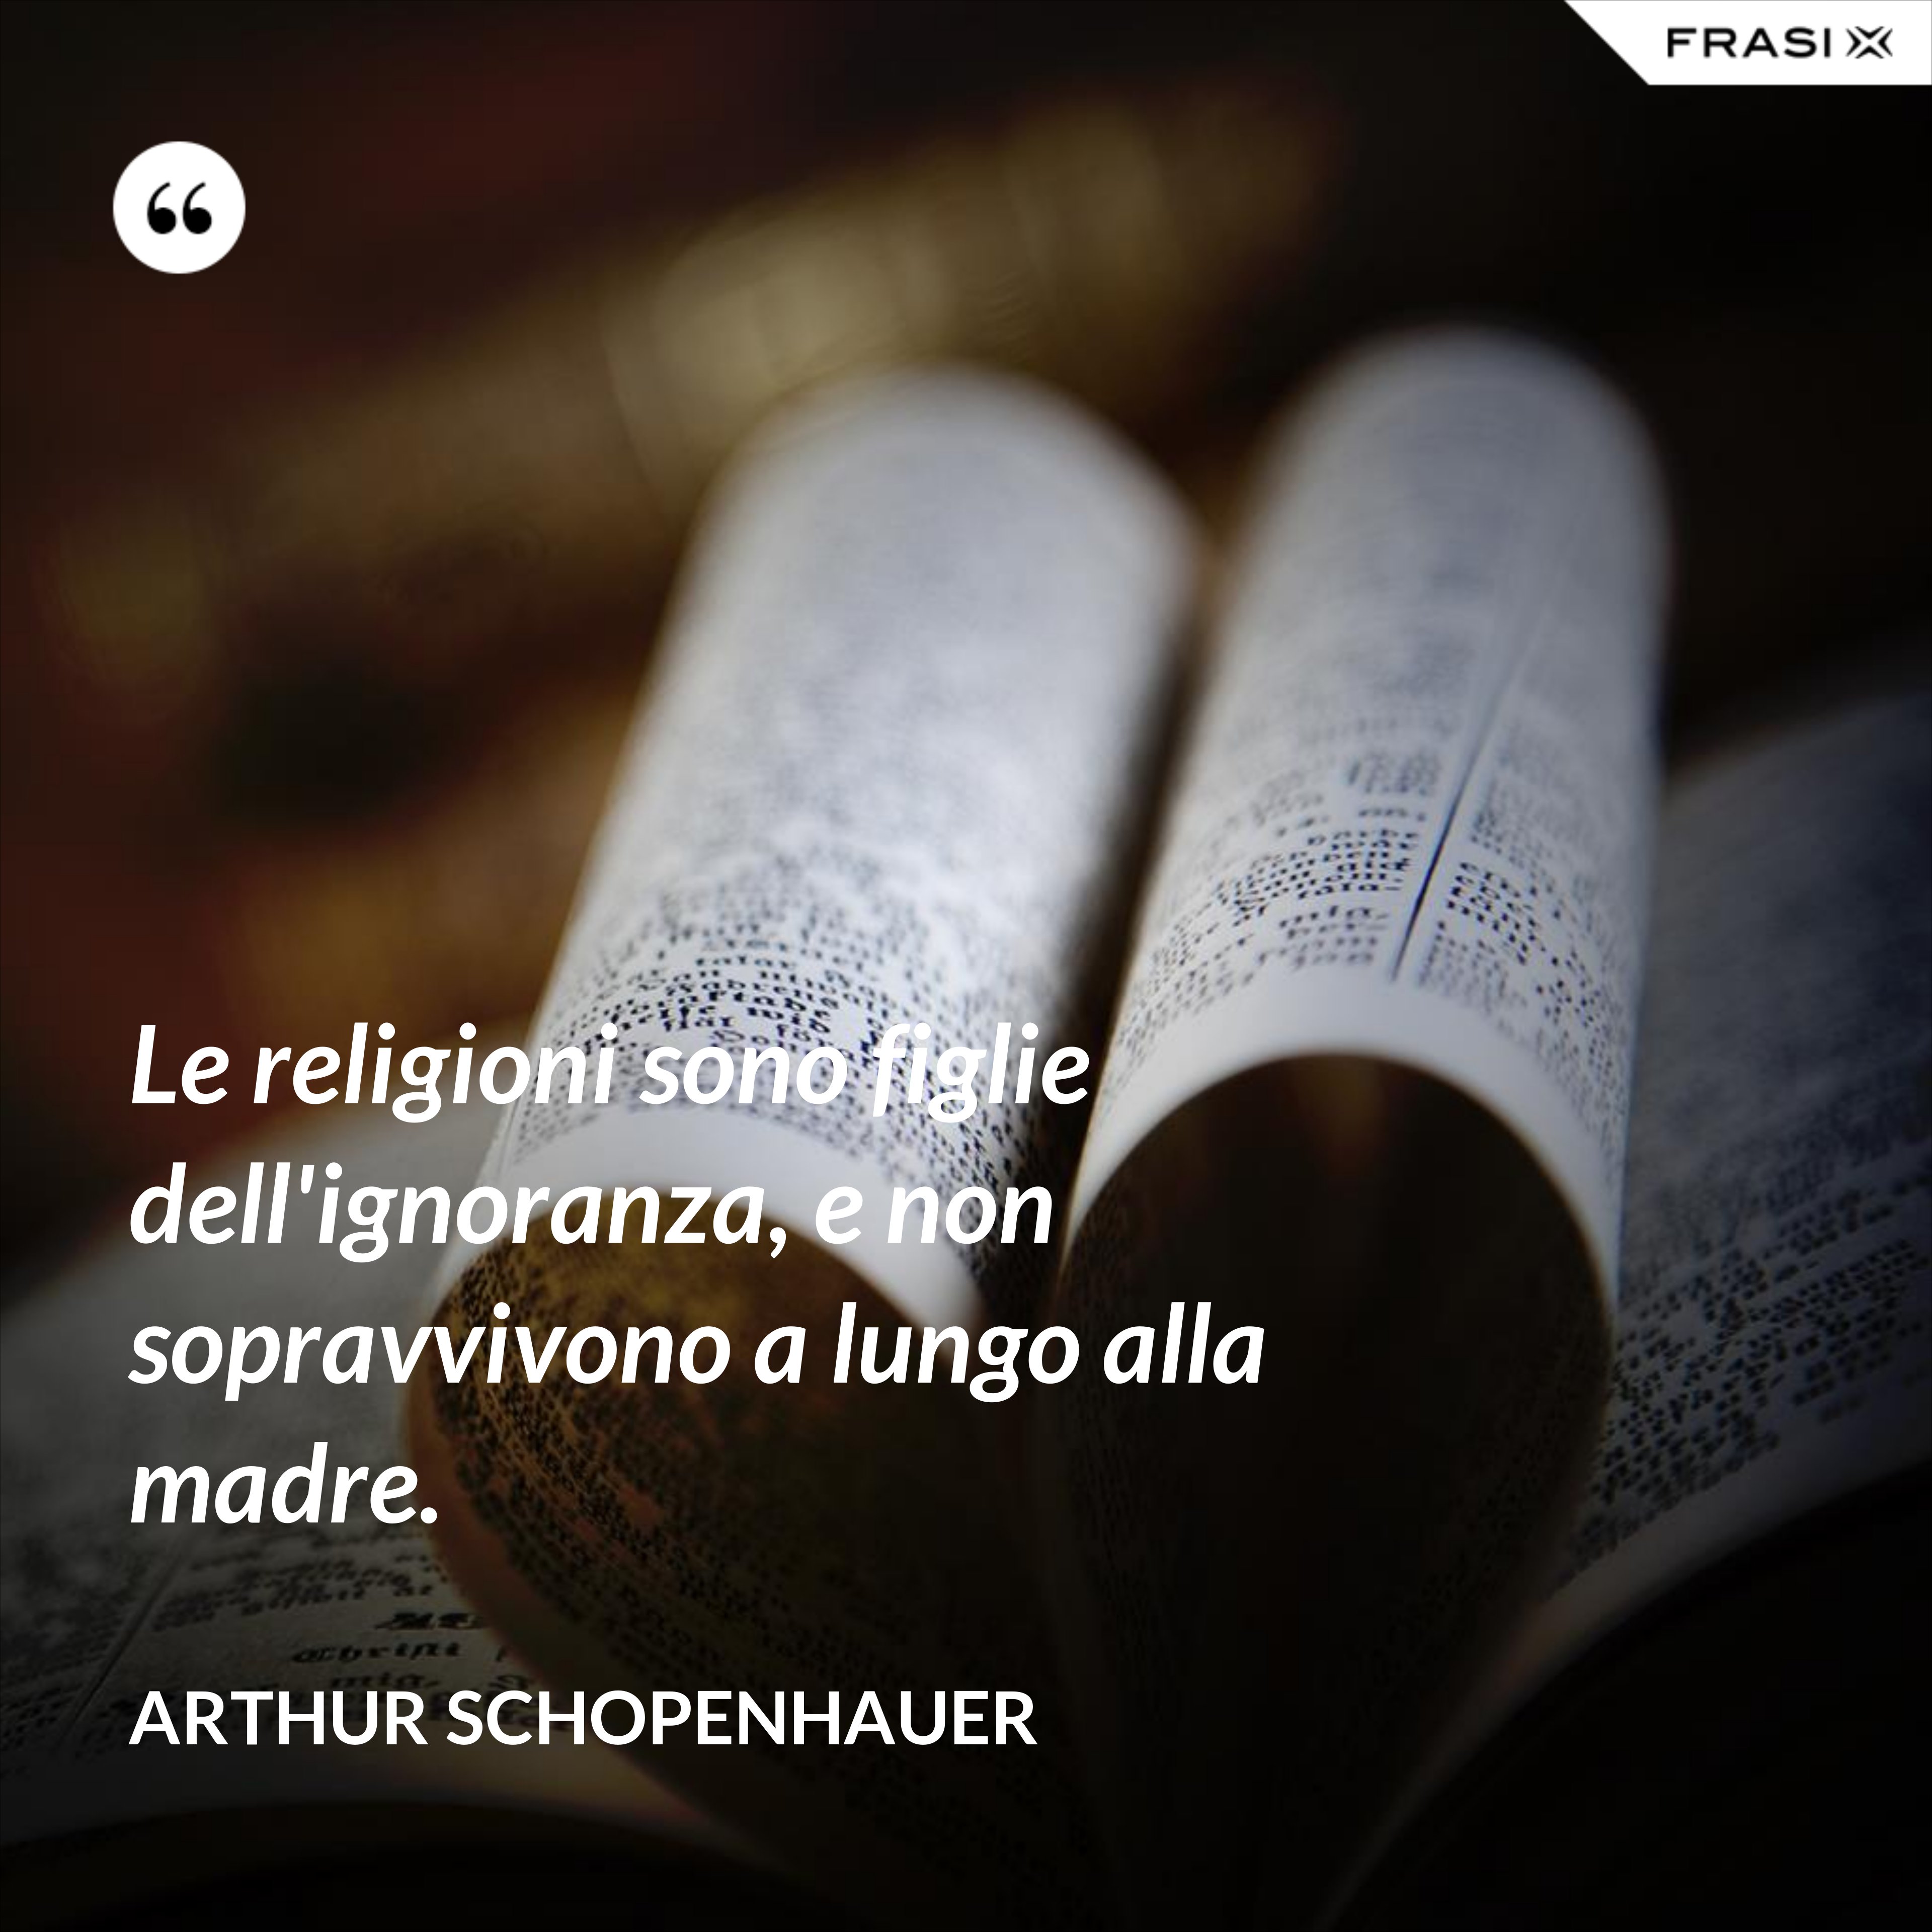 Le religioni sono figlie dell'ignoranza, e non sopravvivono a lungo alla madre. - Arthur Schopenhauer